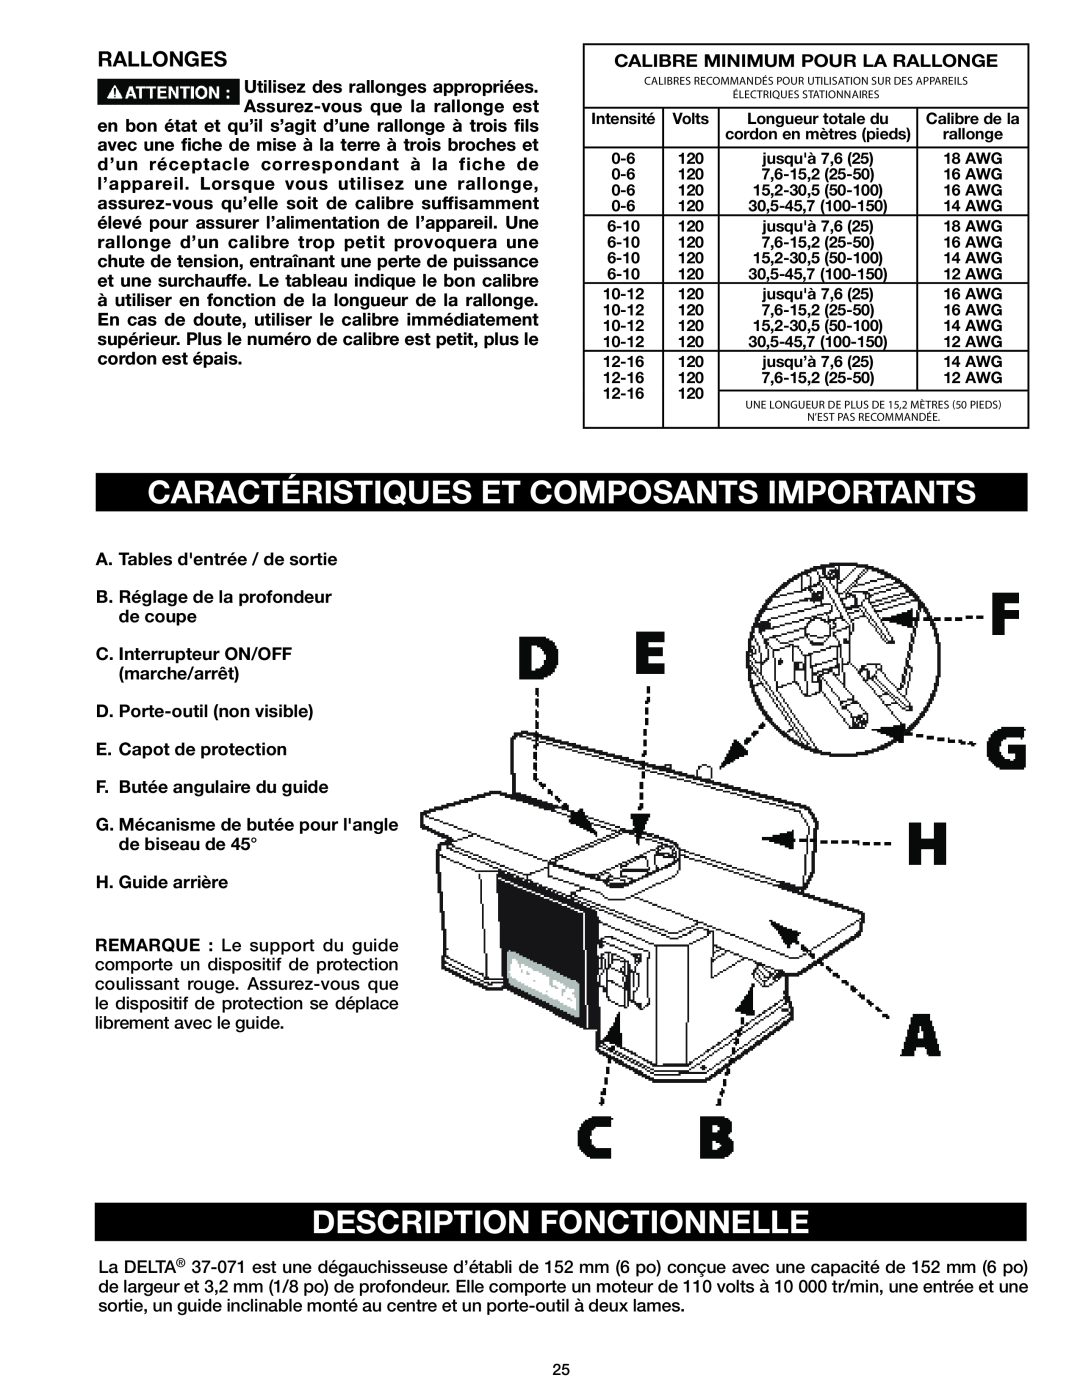 Delta 37-071 instruction manual Caractéristiques Et Composants Importants, Description Fonctionnelle, Rallonges 